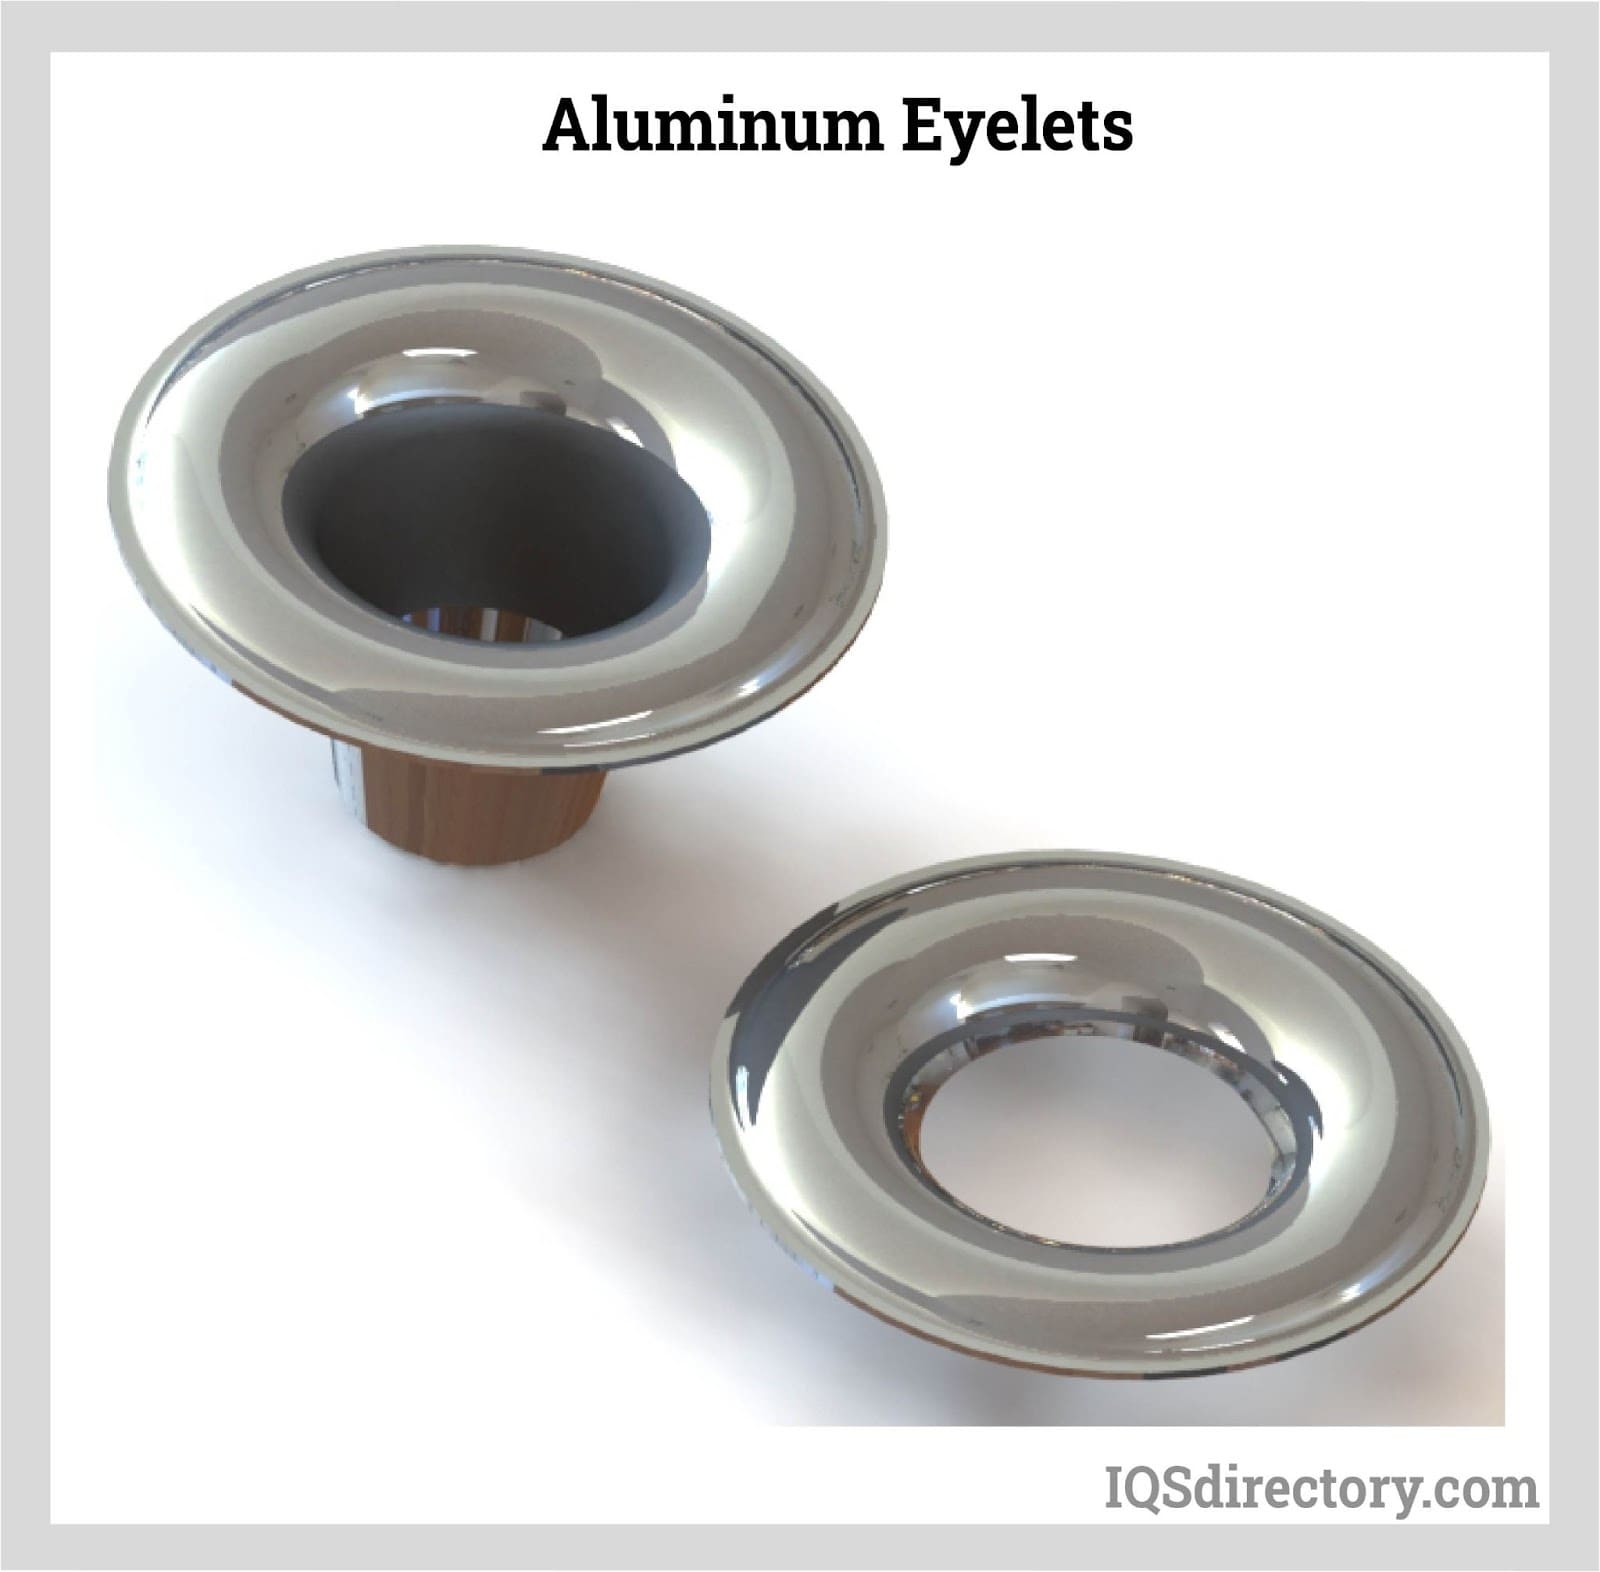 Aluminum Eyelets